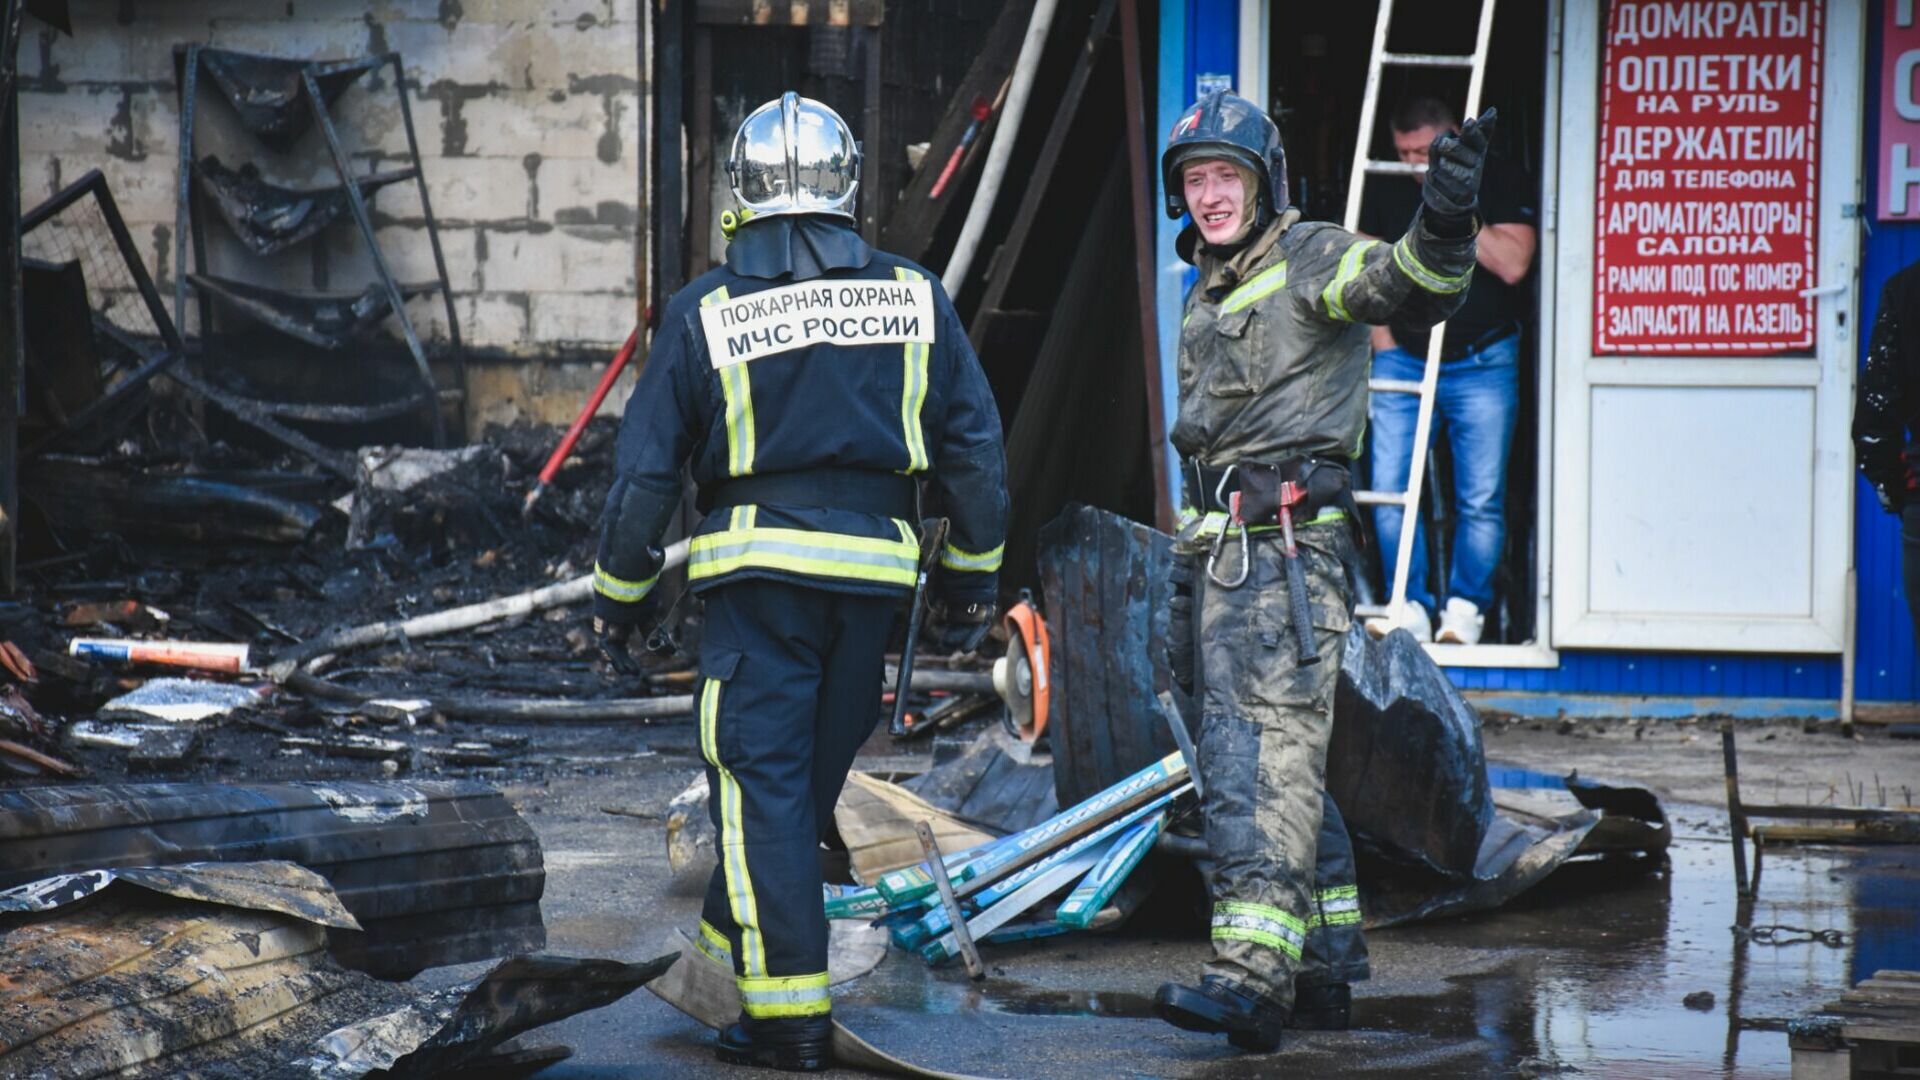 Омские спасатели ликвидировали 213 пожаров и спасли 28 человек за месяц